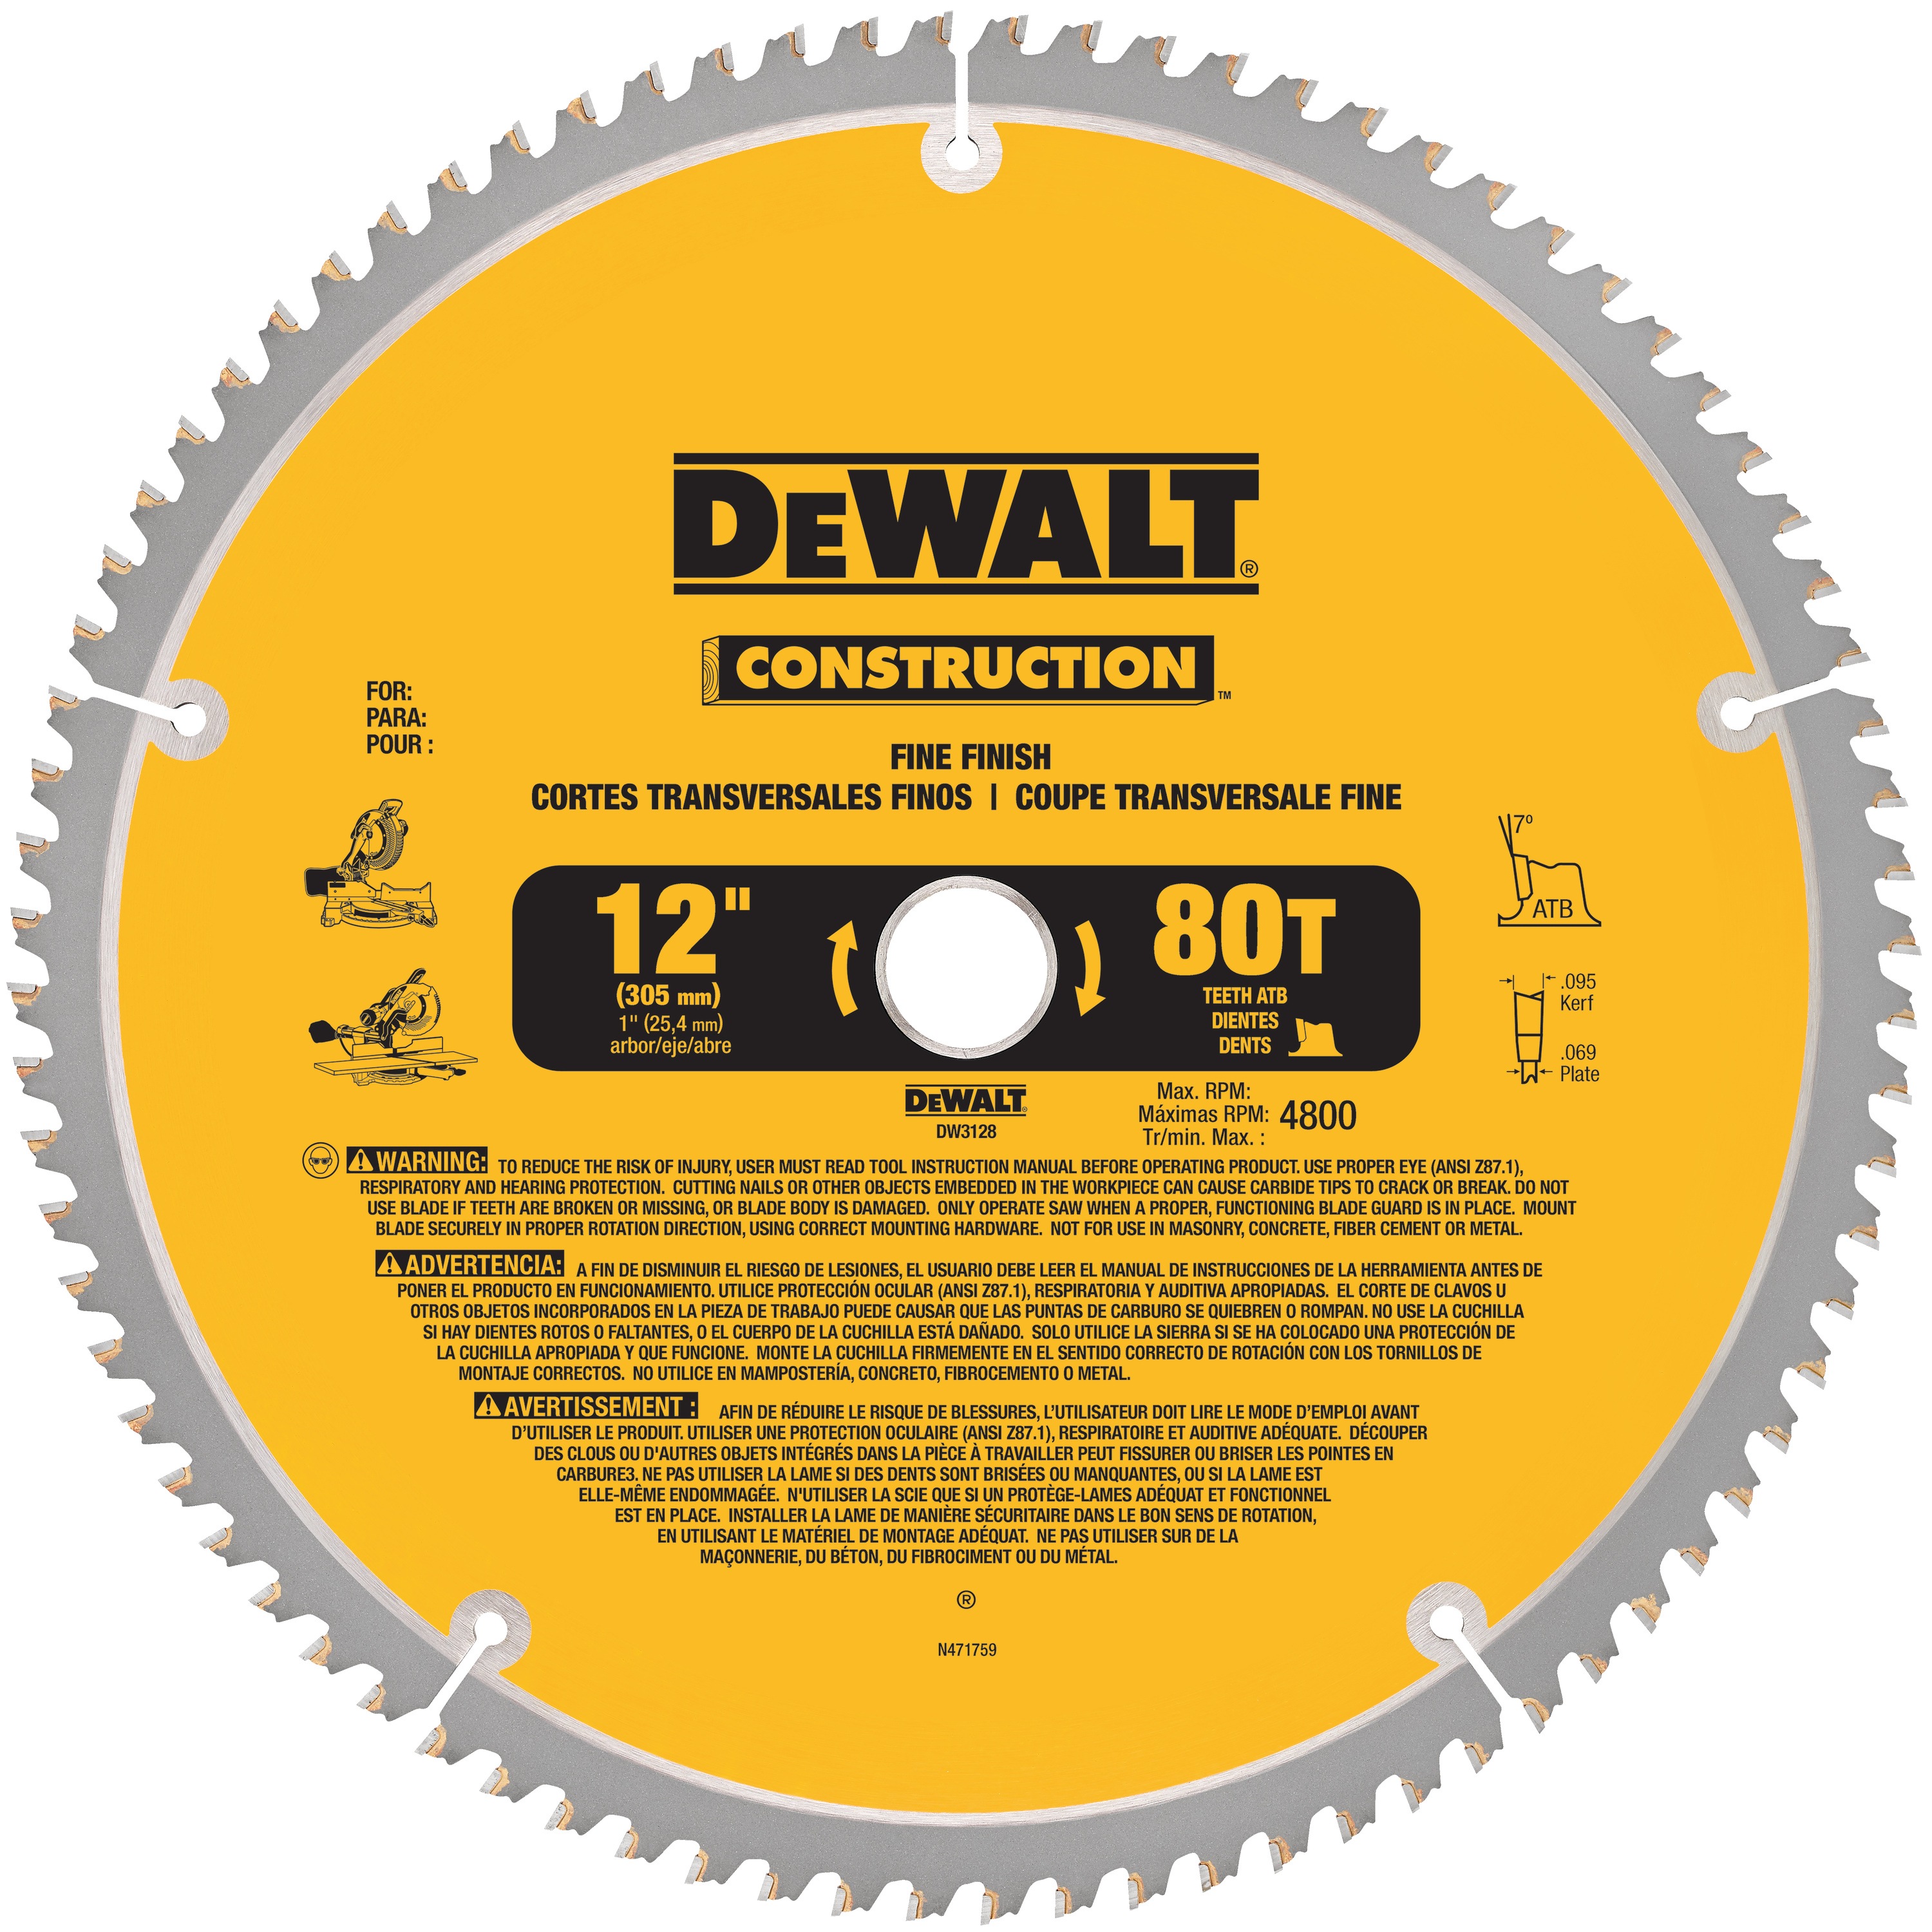 DEWALT - 12 Construction Miter Saw Blades - DW3128